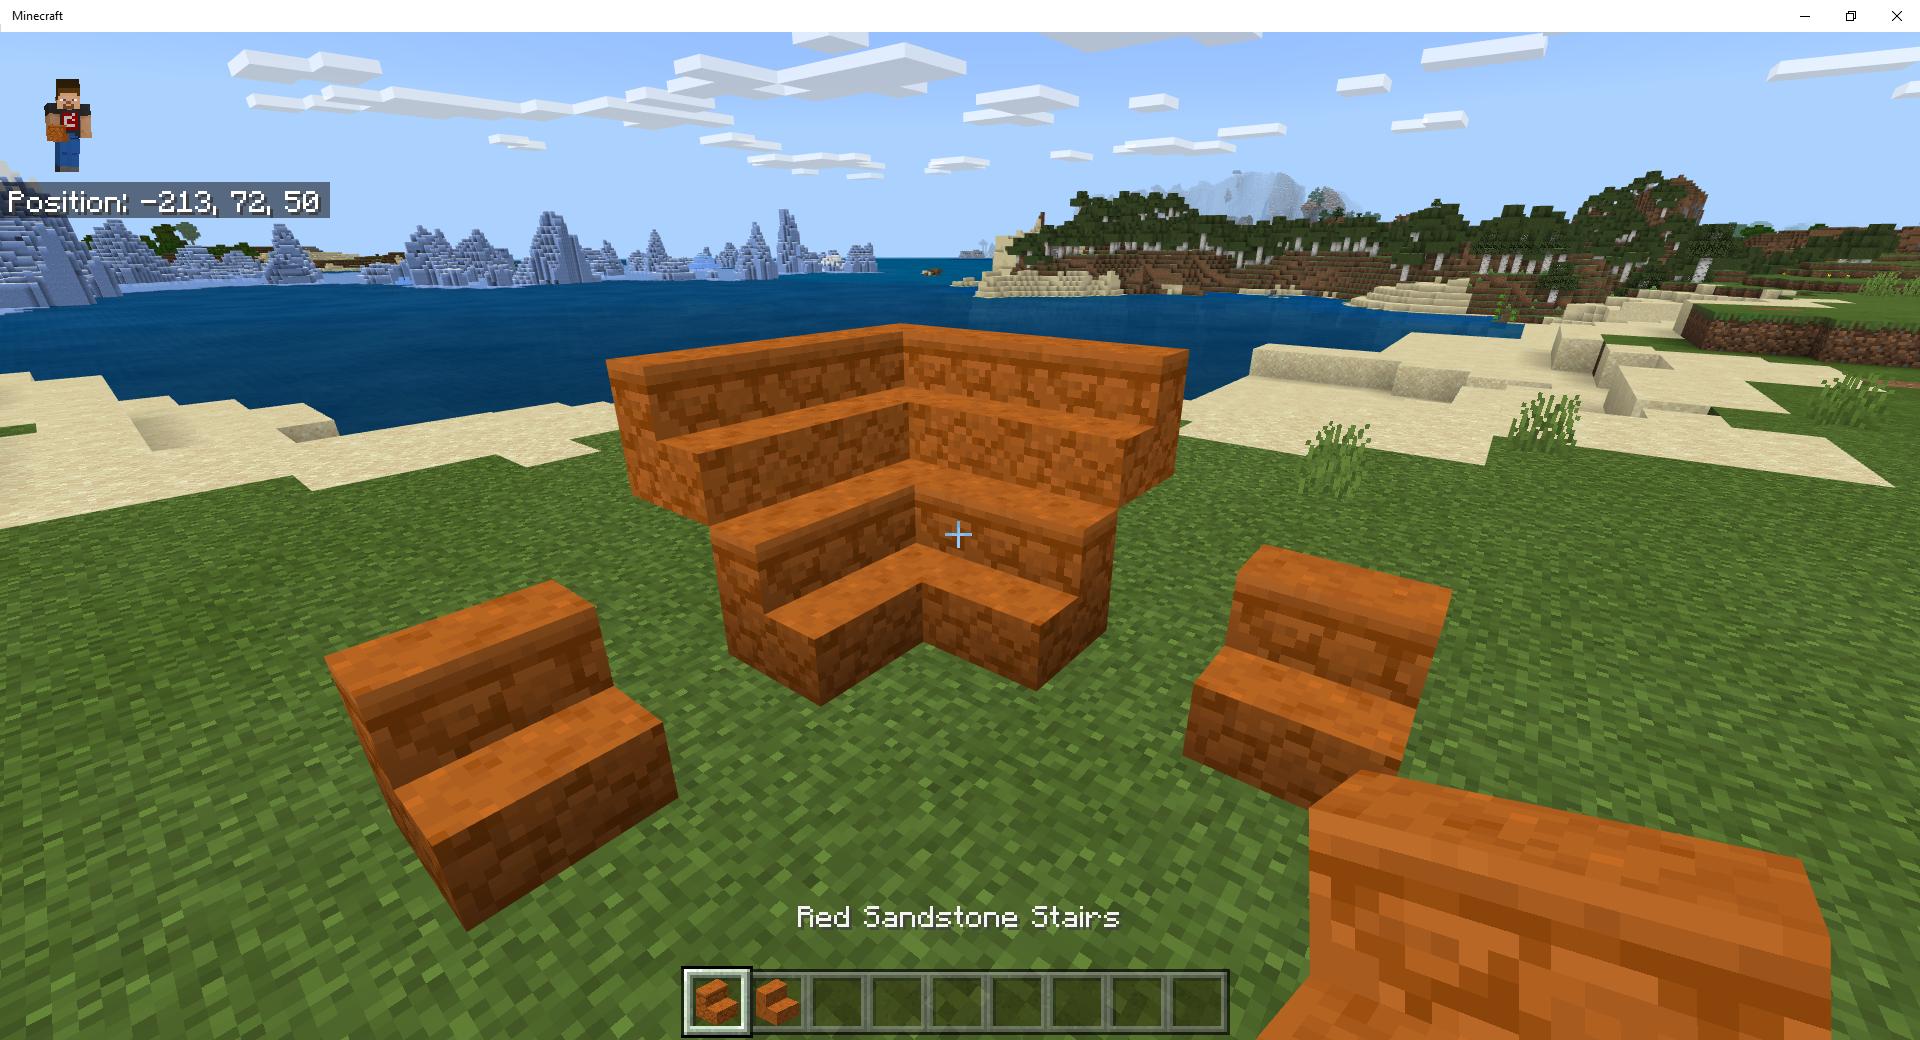 Sandstone Stairs in Minecraft